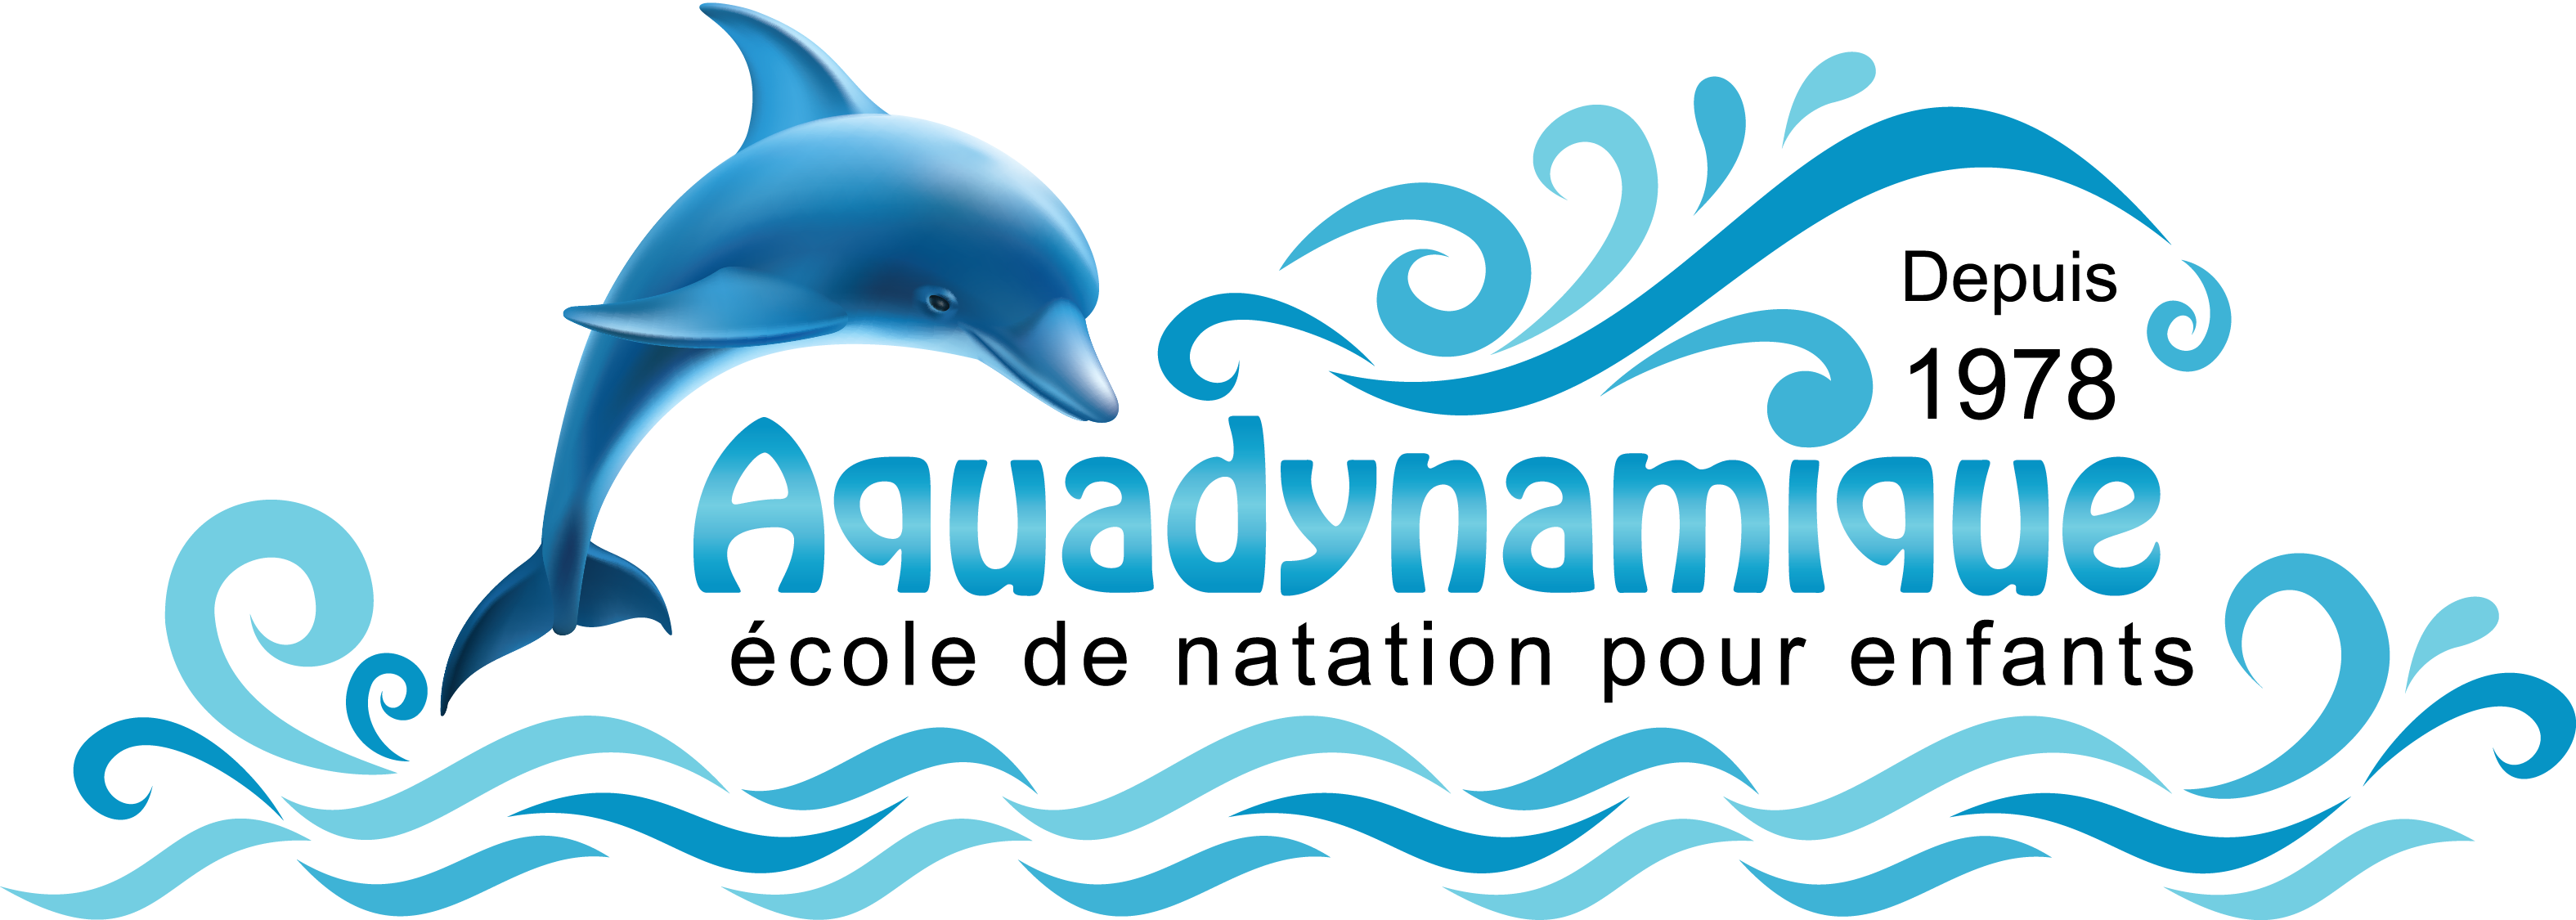 École de natation AquaDynamique